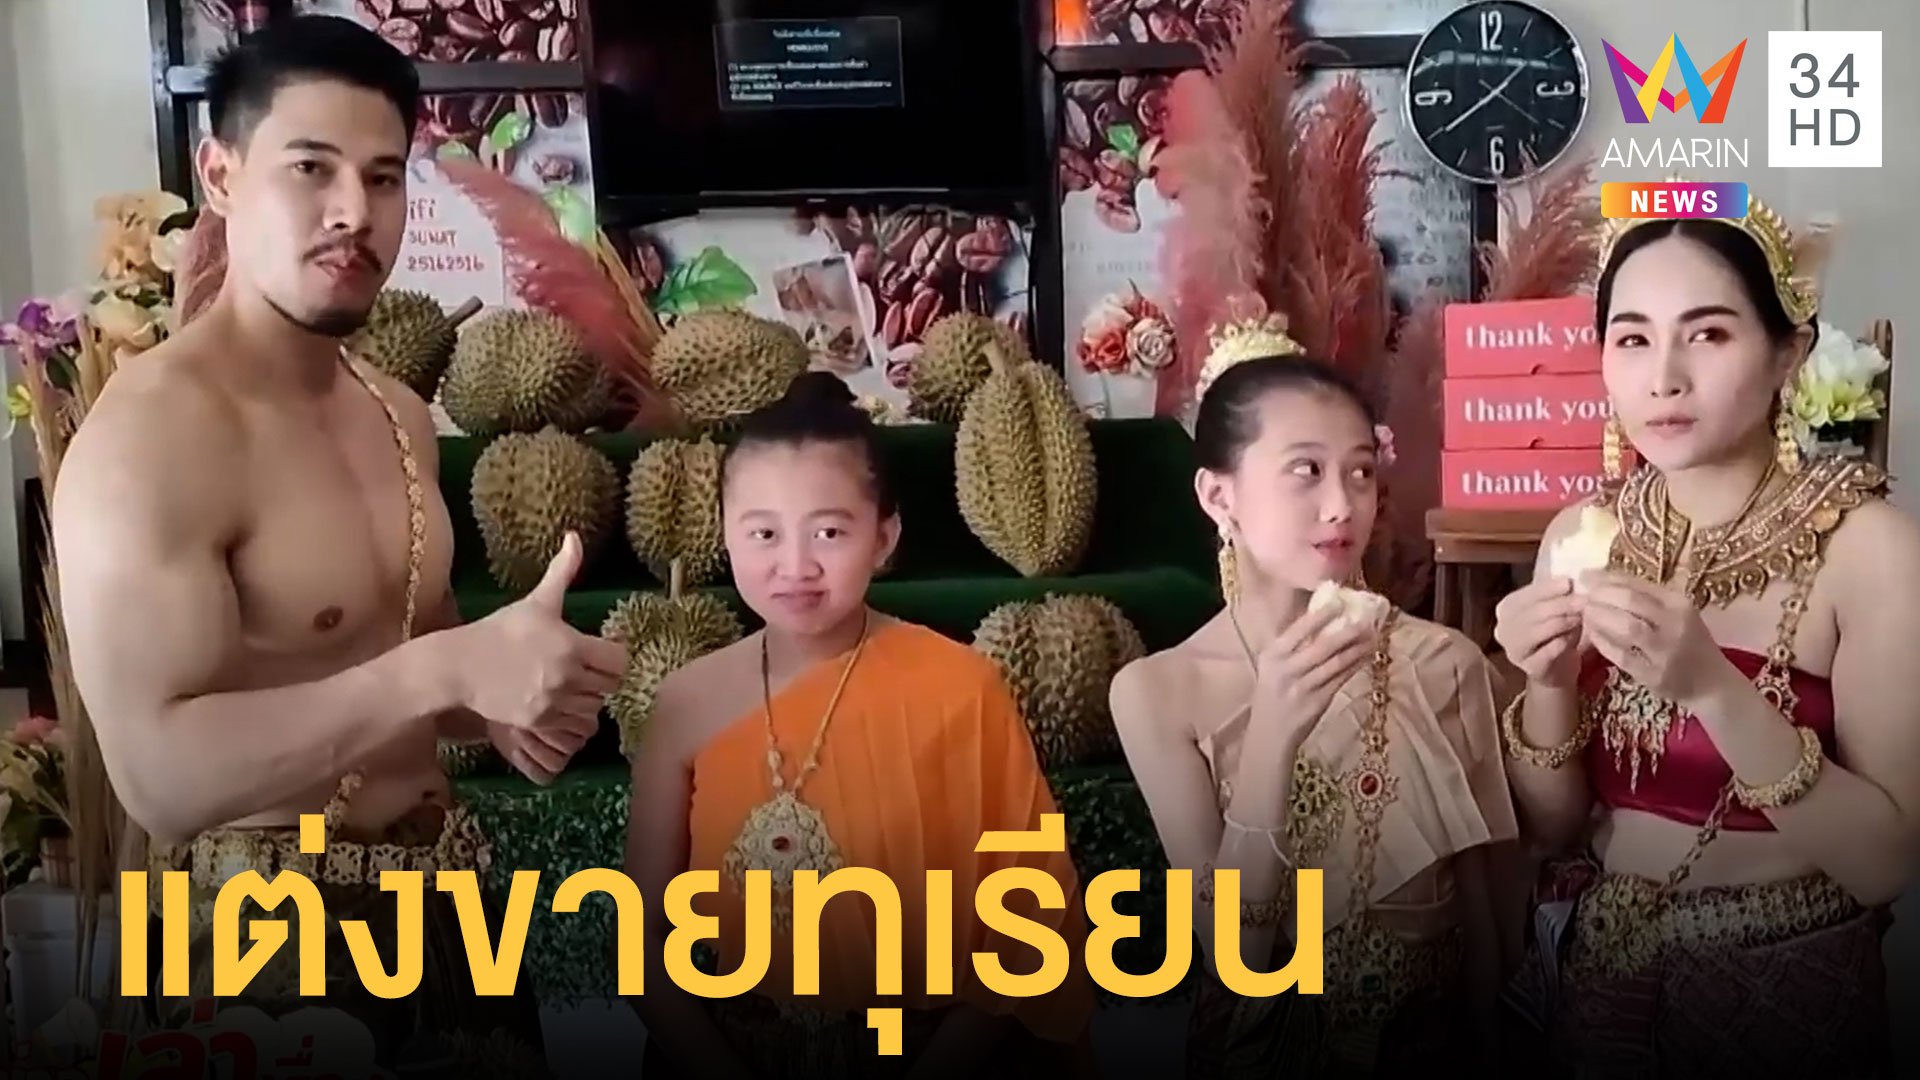 หนุ่มกล้ามล่ำสาวสวยแต่งชุดไทยขายทุเรียนเรียกลูกค้า  | ข่าวเที่ยงอมรินทร์ | 10 มิ.ย. 65 | AMARIN TVHD34